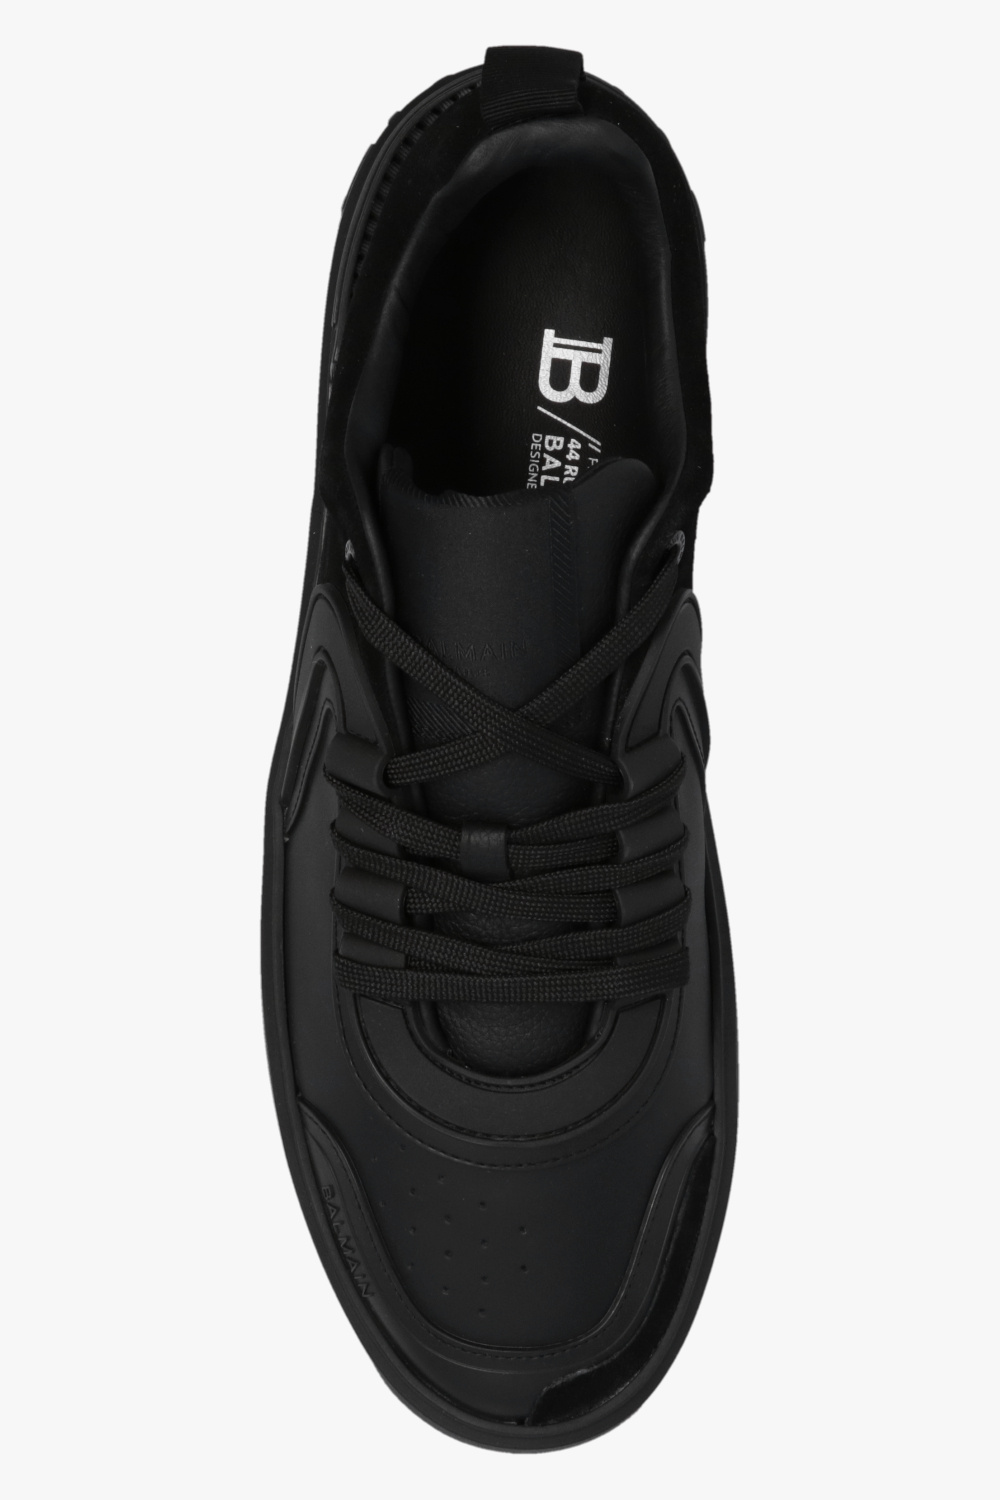 balmain curved ‘B-Skate’ sneakers